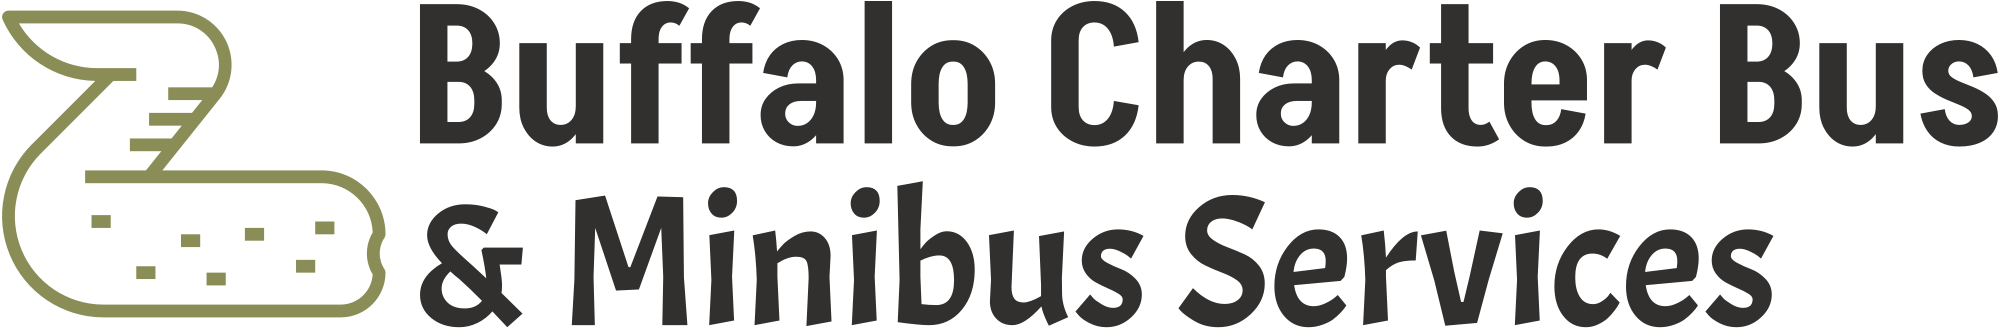 Charter Bus Company Buffalo logo